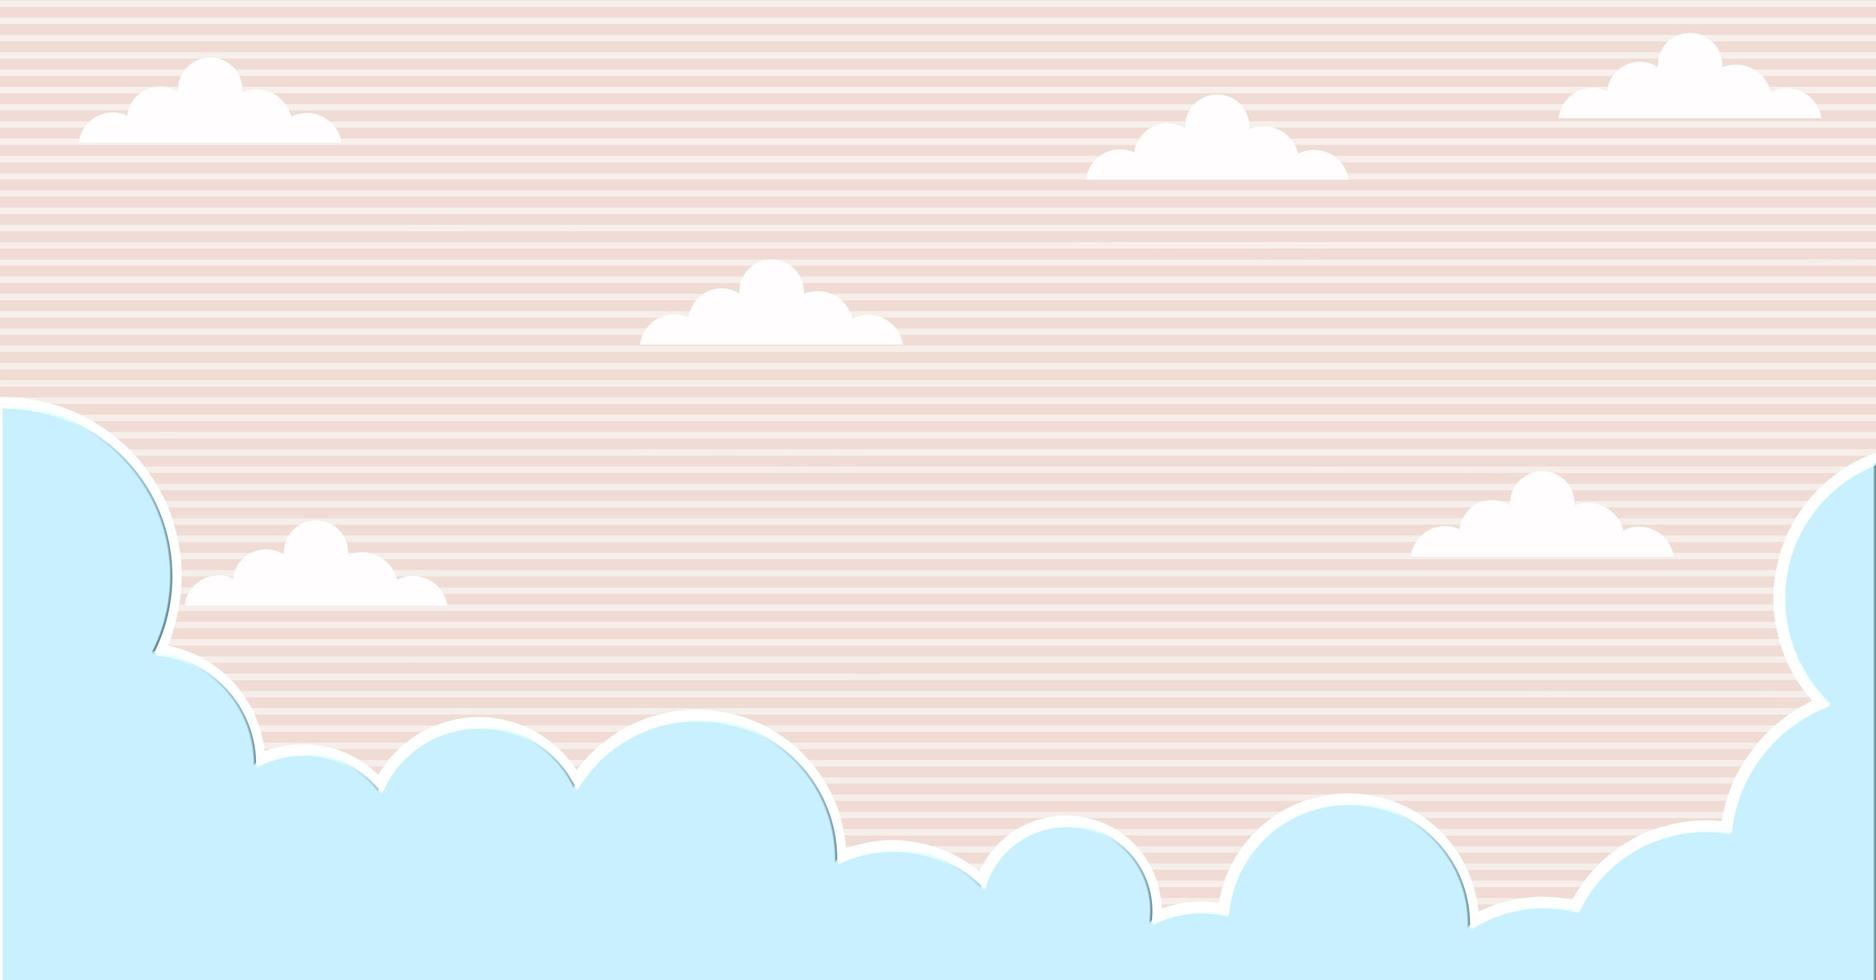 abstrakte kawaii wolkenkarikatur auf blauem himmel, hintergrund. Konzept für Kinder und Kindergärten oder Präsentation foto